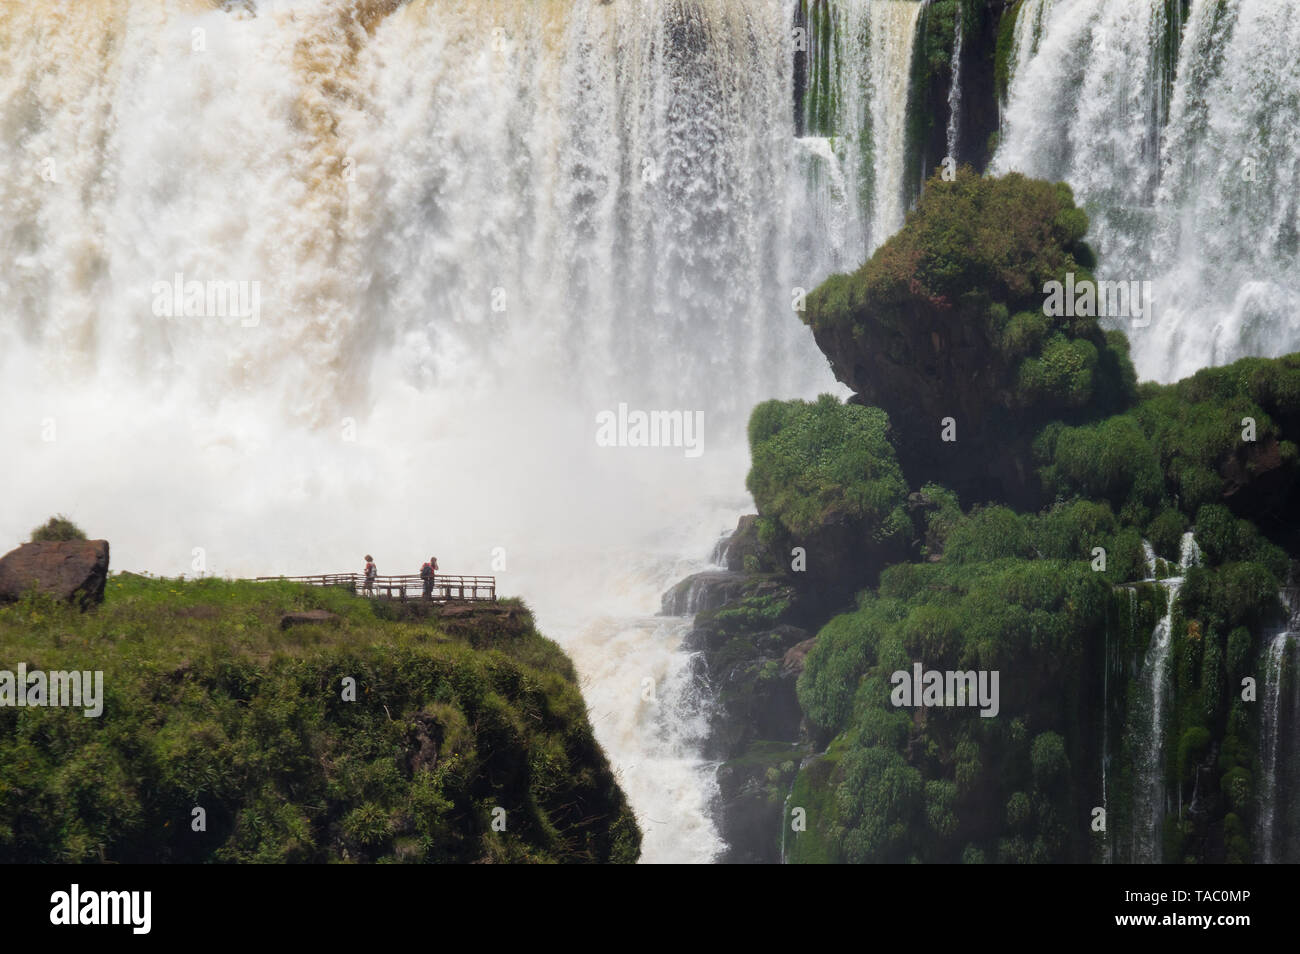 Les touristes près de l'immense chute d'eau à Parc National de l'Iguazu, Argentine Banque D'Images